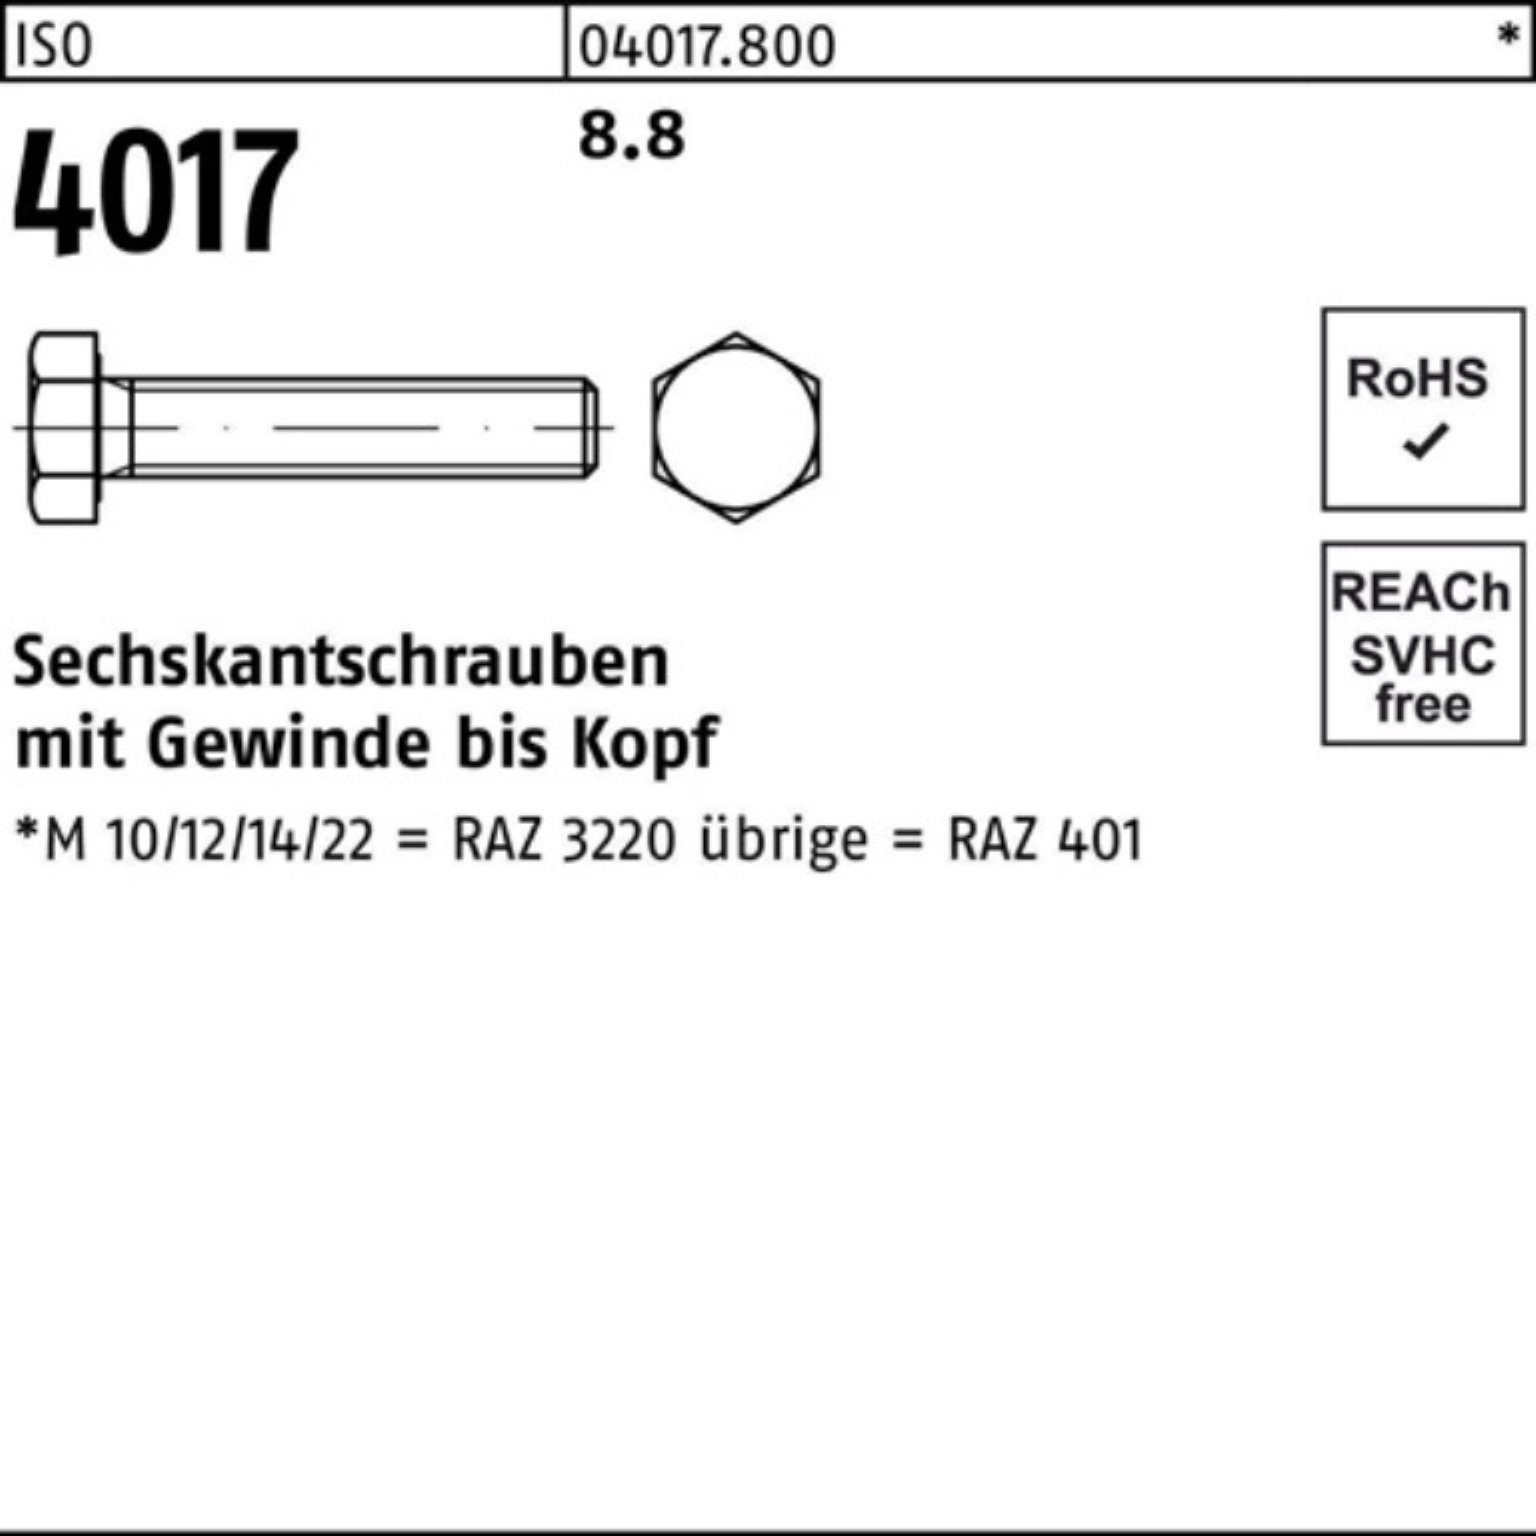 4017 Stück 500er Sechskantschraube Pack 500 401 8.8 VG ISO Bufab 22 M3x ISO Sechskantschraube